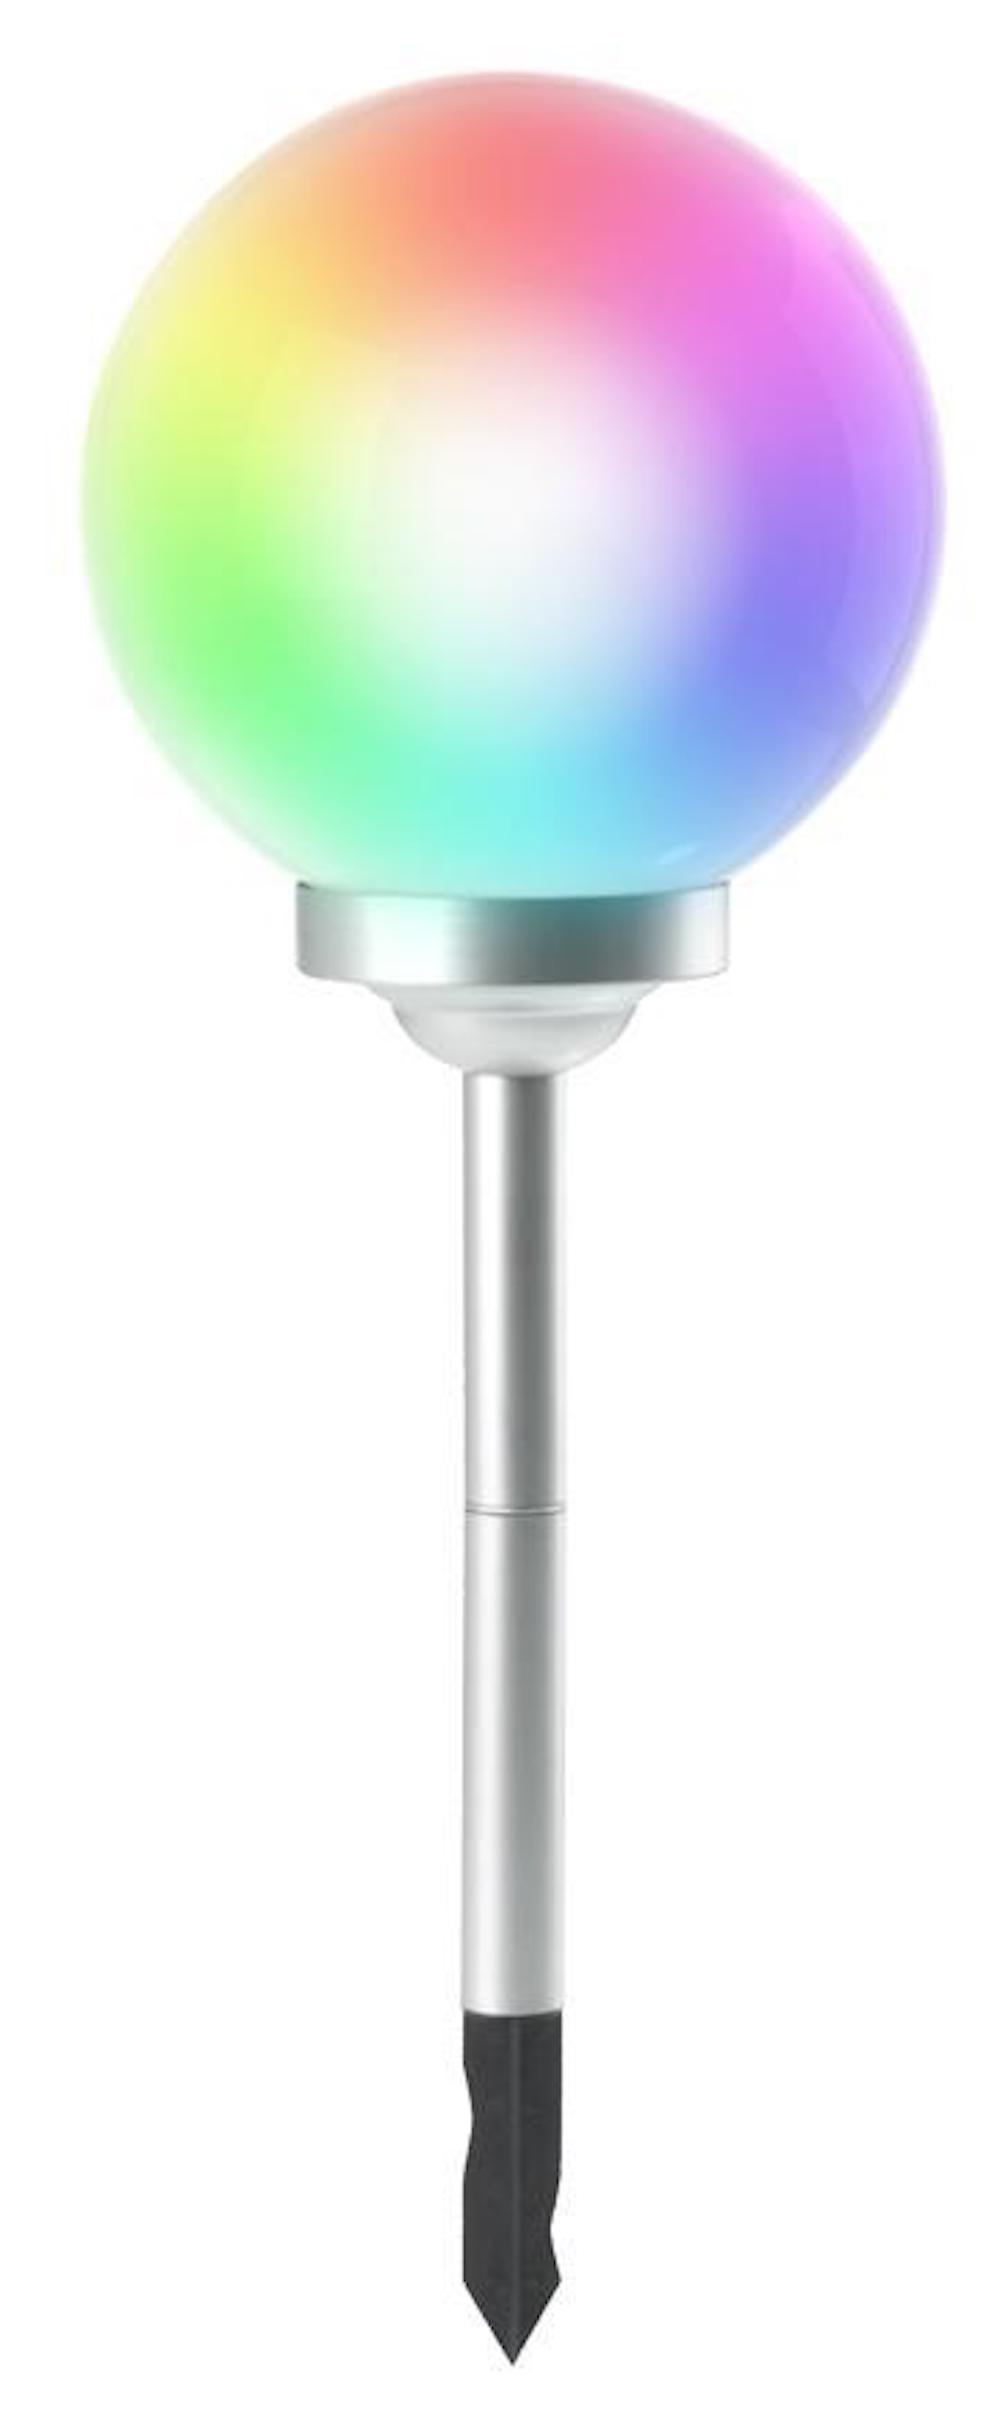 RAINBOW Solarlampe mit automatischer Einschaltfunktion | HxØ 73,5x30cm | 4-farbige LEDs | Automatisches Schalten | Gartenlampe, Rattanlampe, LED Lampe, Solarlampe